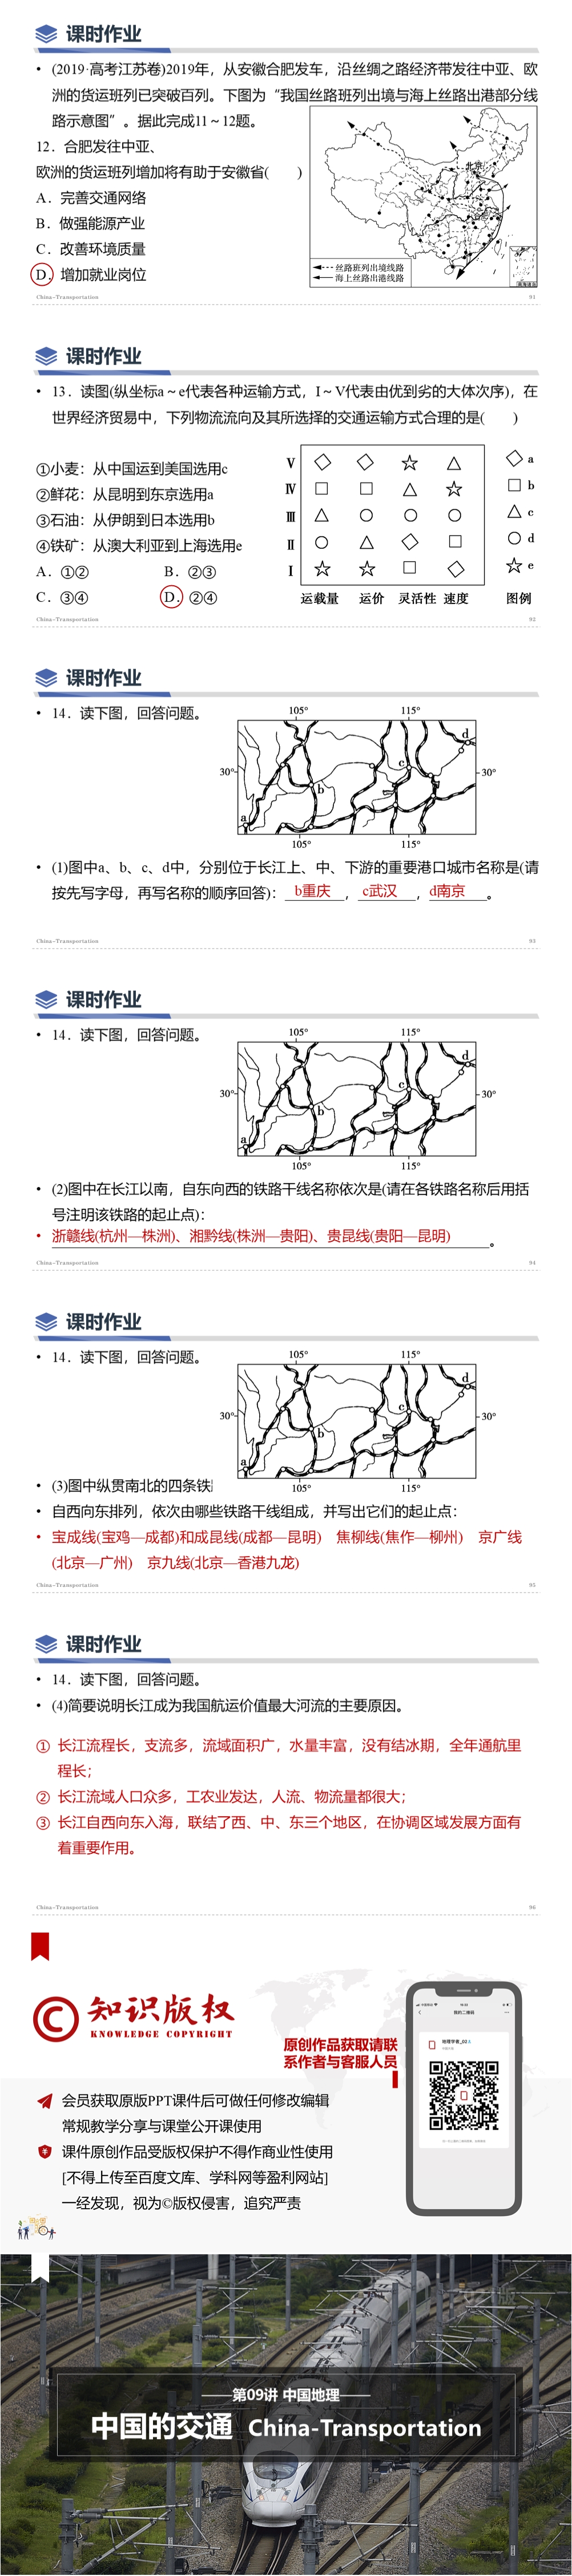 第09讲 中国的交通运输业 [2021版]-1000px-0901.jpg